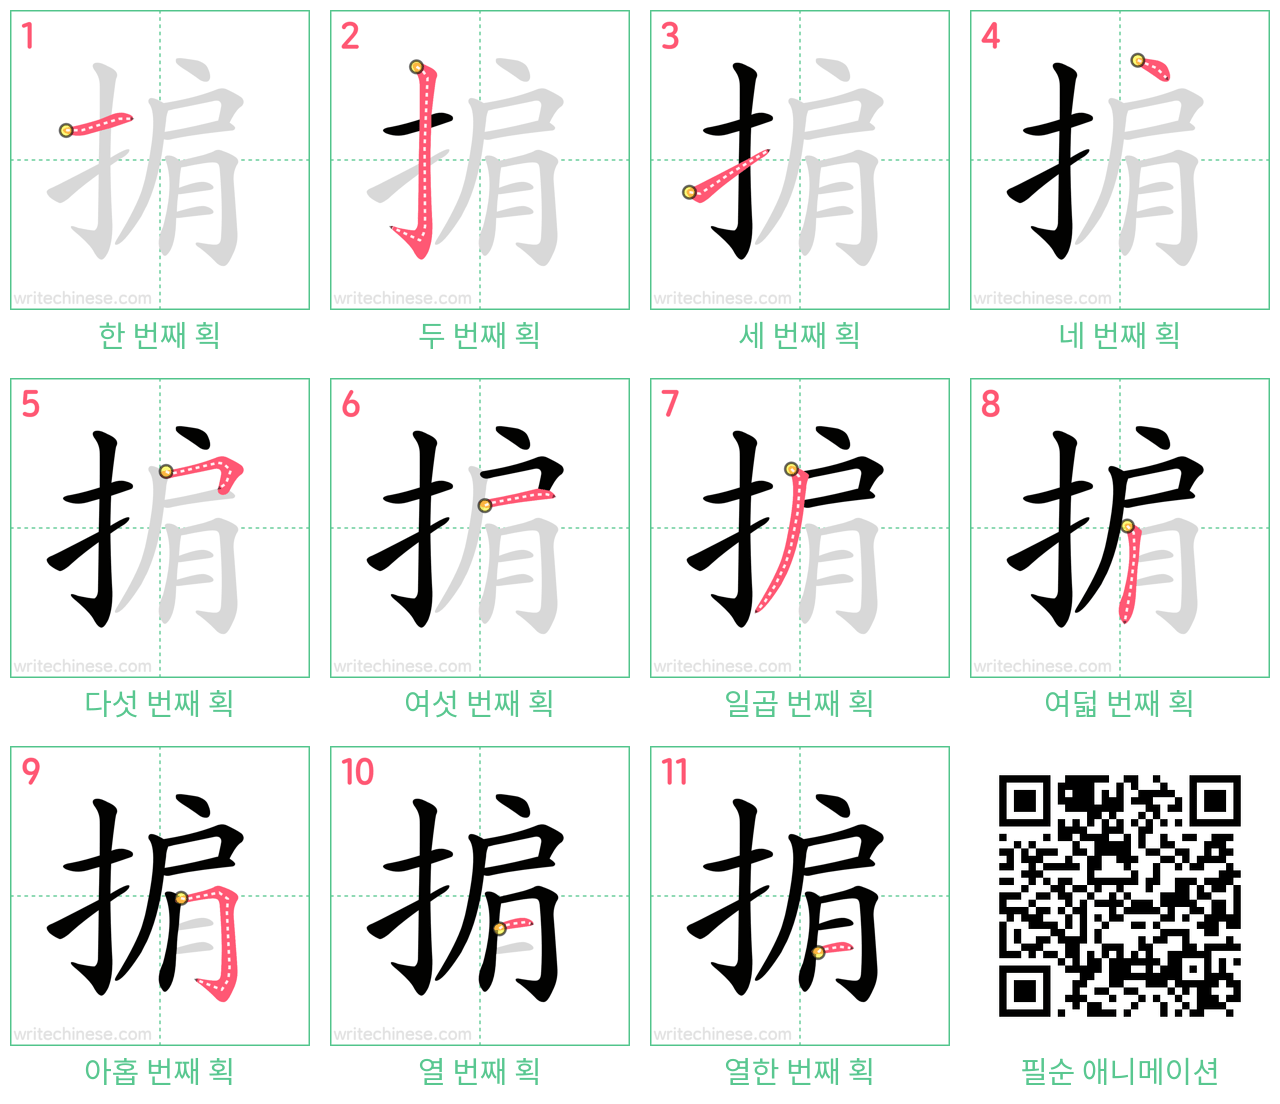 掮 step-by-step stroke order diagrams